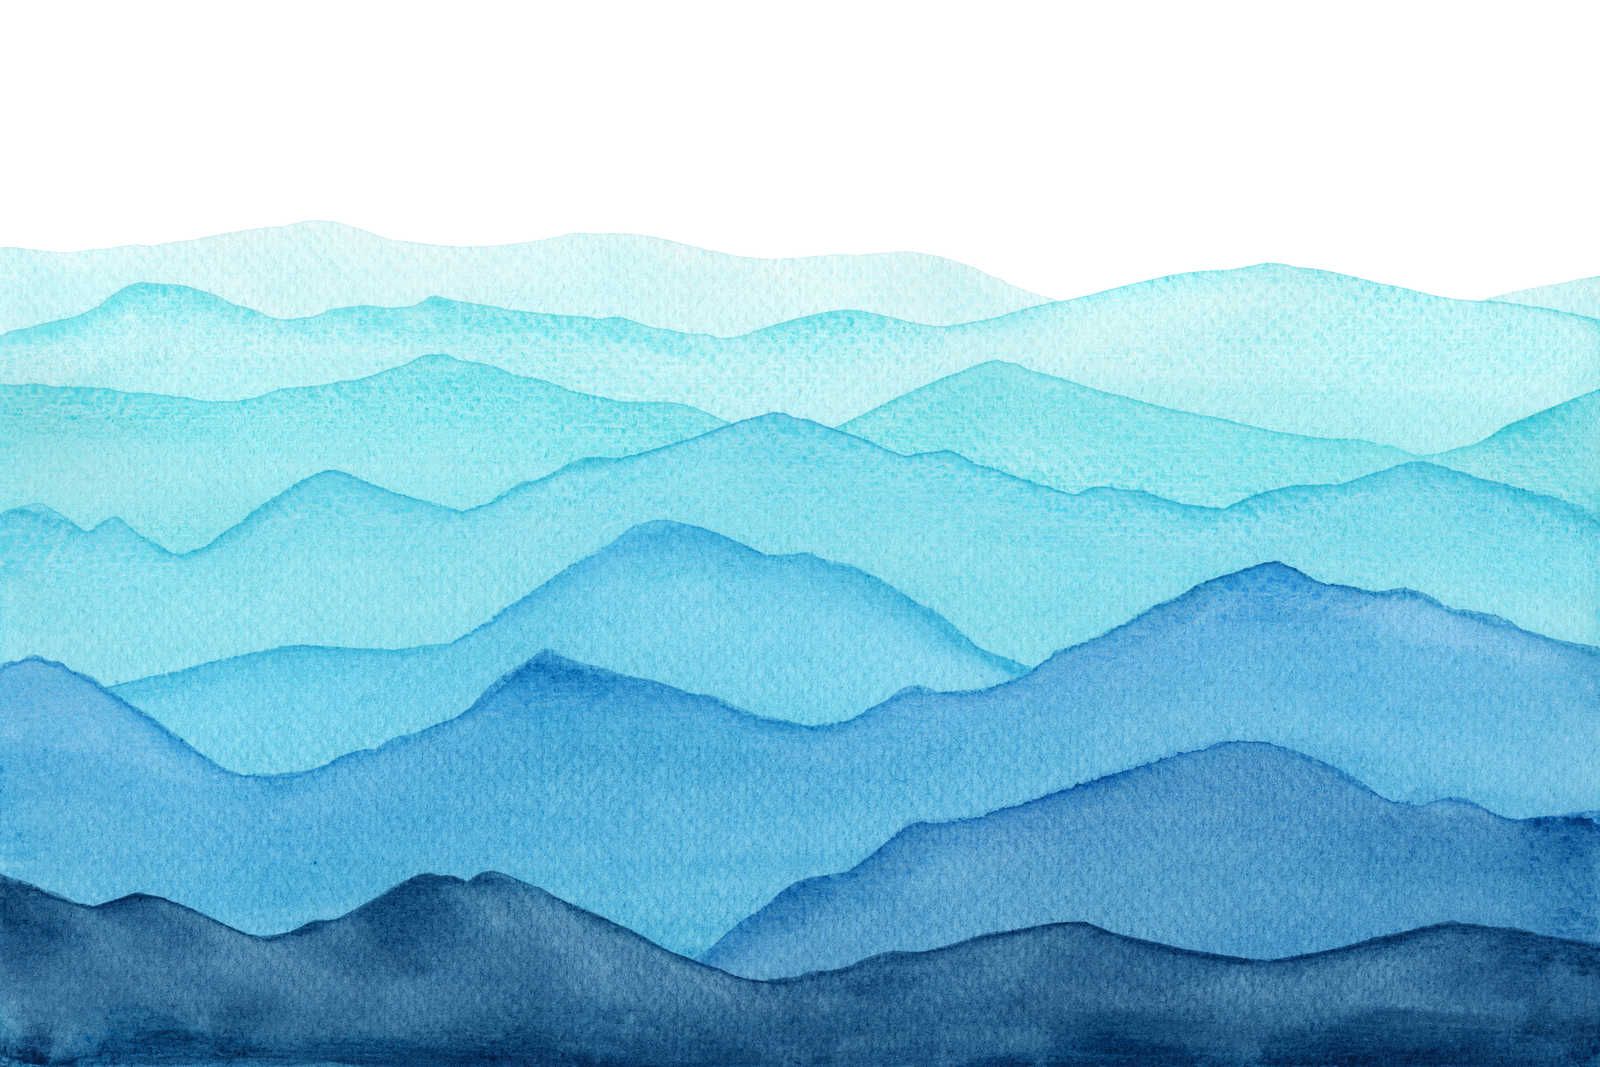             Canvas Zee met golven in aquarel - 90 cm x 60 cm
        